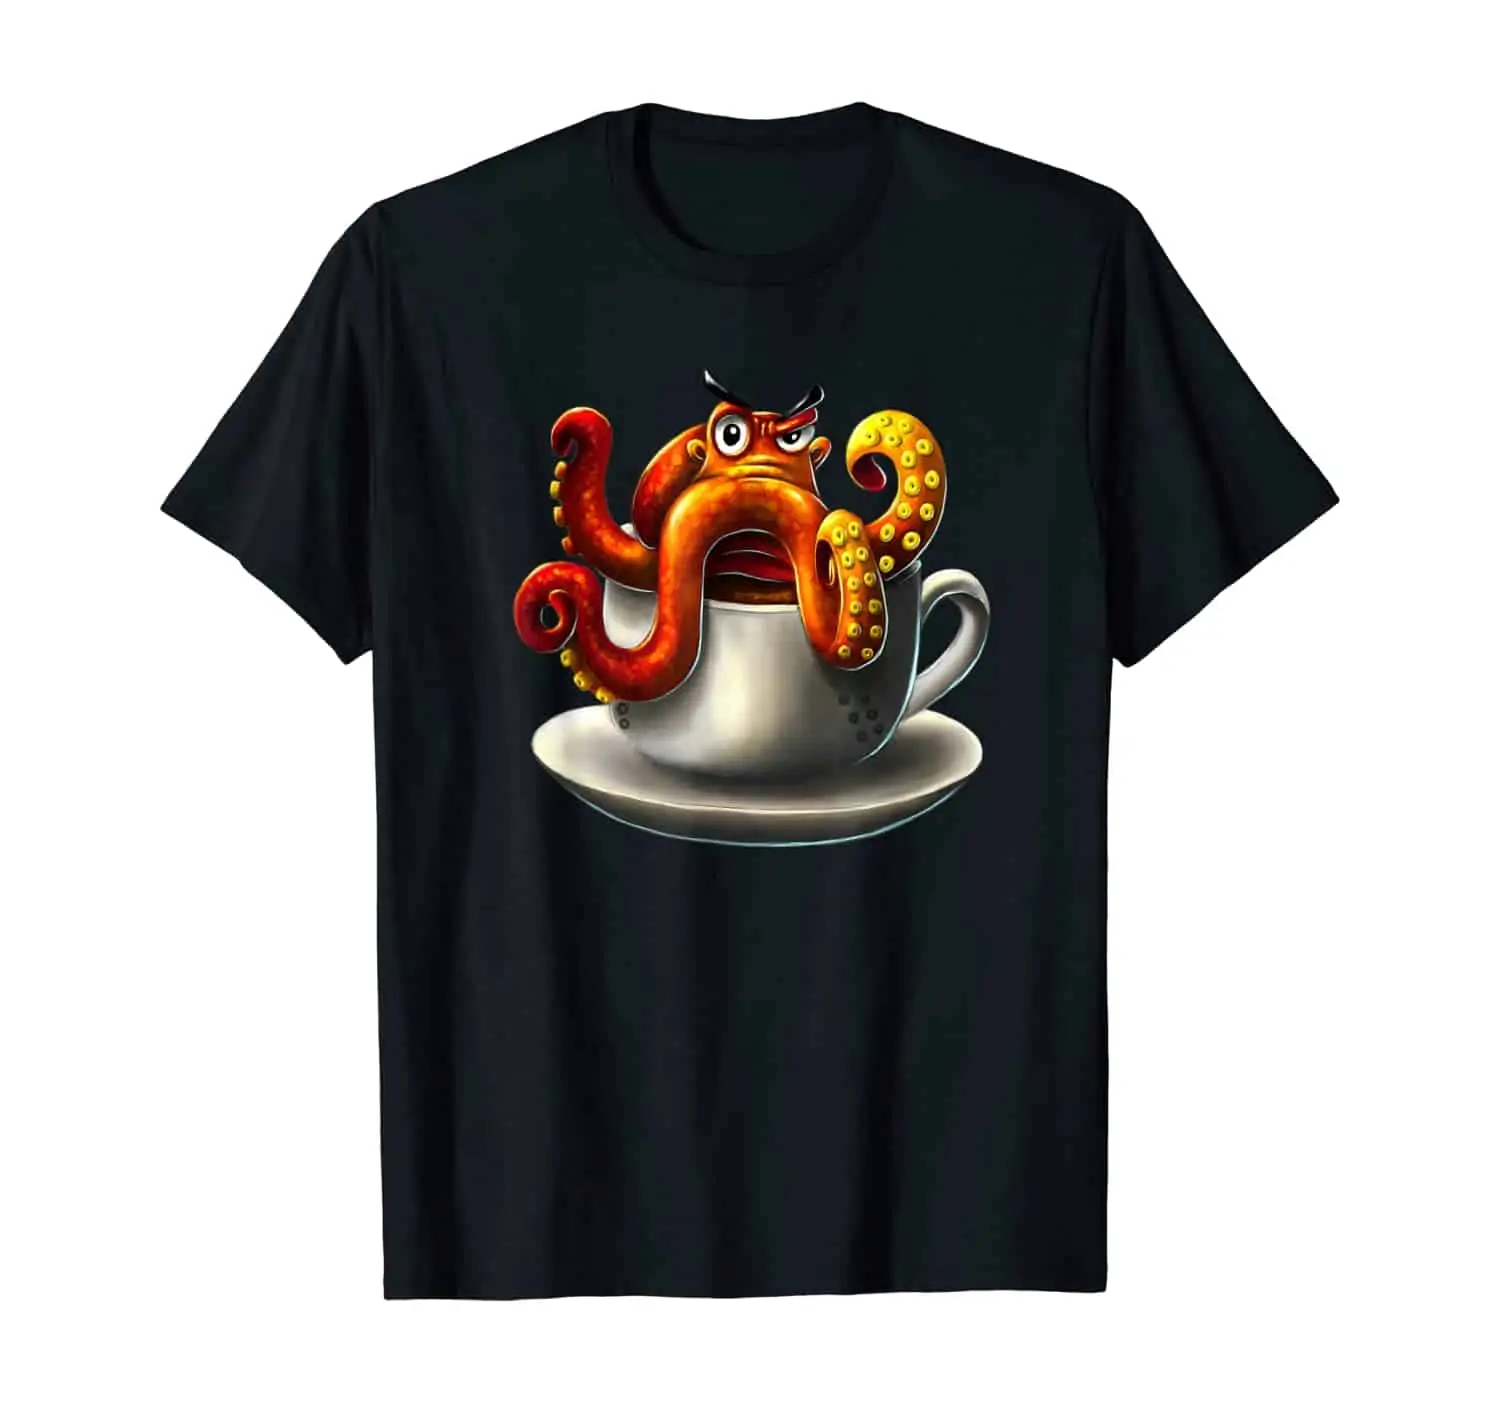 Oktopus Tintenfisch Kaffee Trinker, Kaffee Liebhaber, Morgenmuffel, Kaffeetrinker, Kaffee Spruch T-Shirt Design